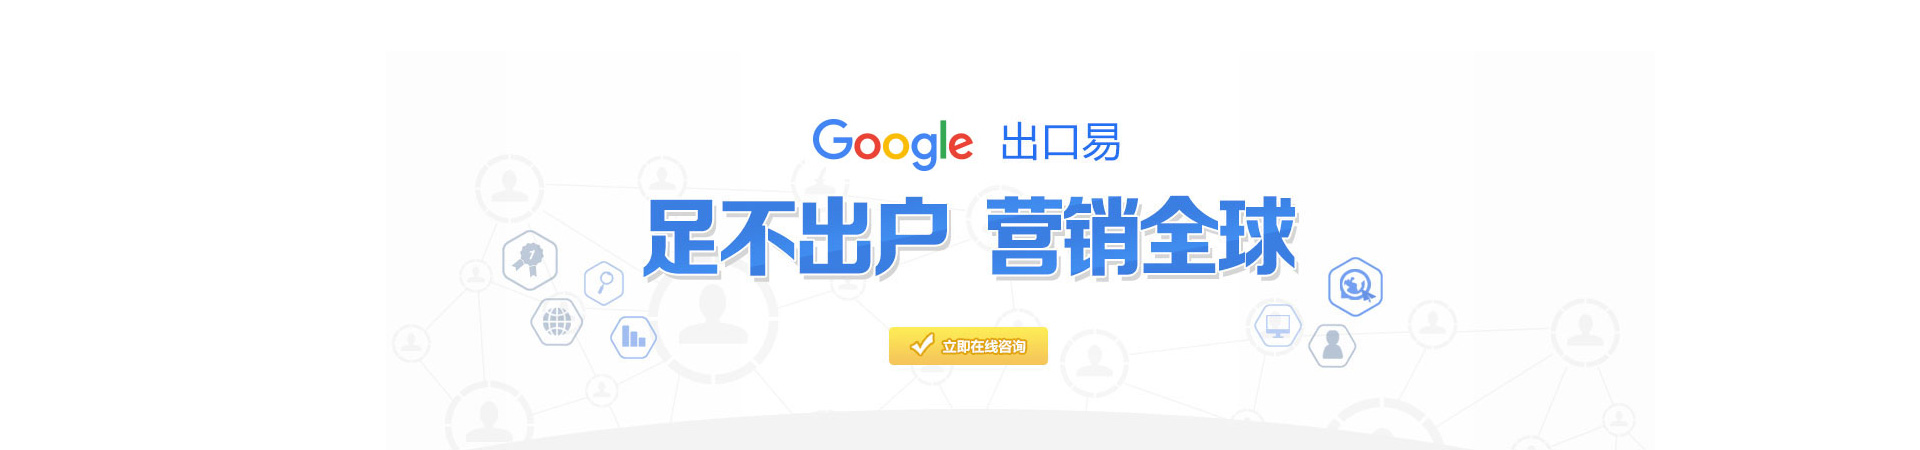 西藏谷歌海外推广